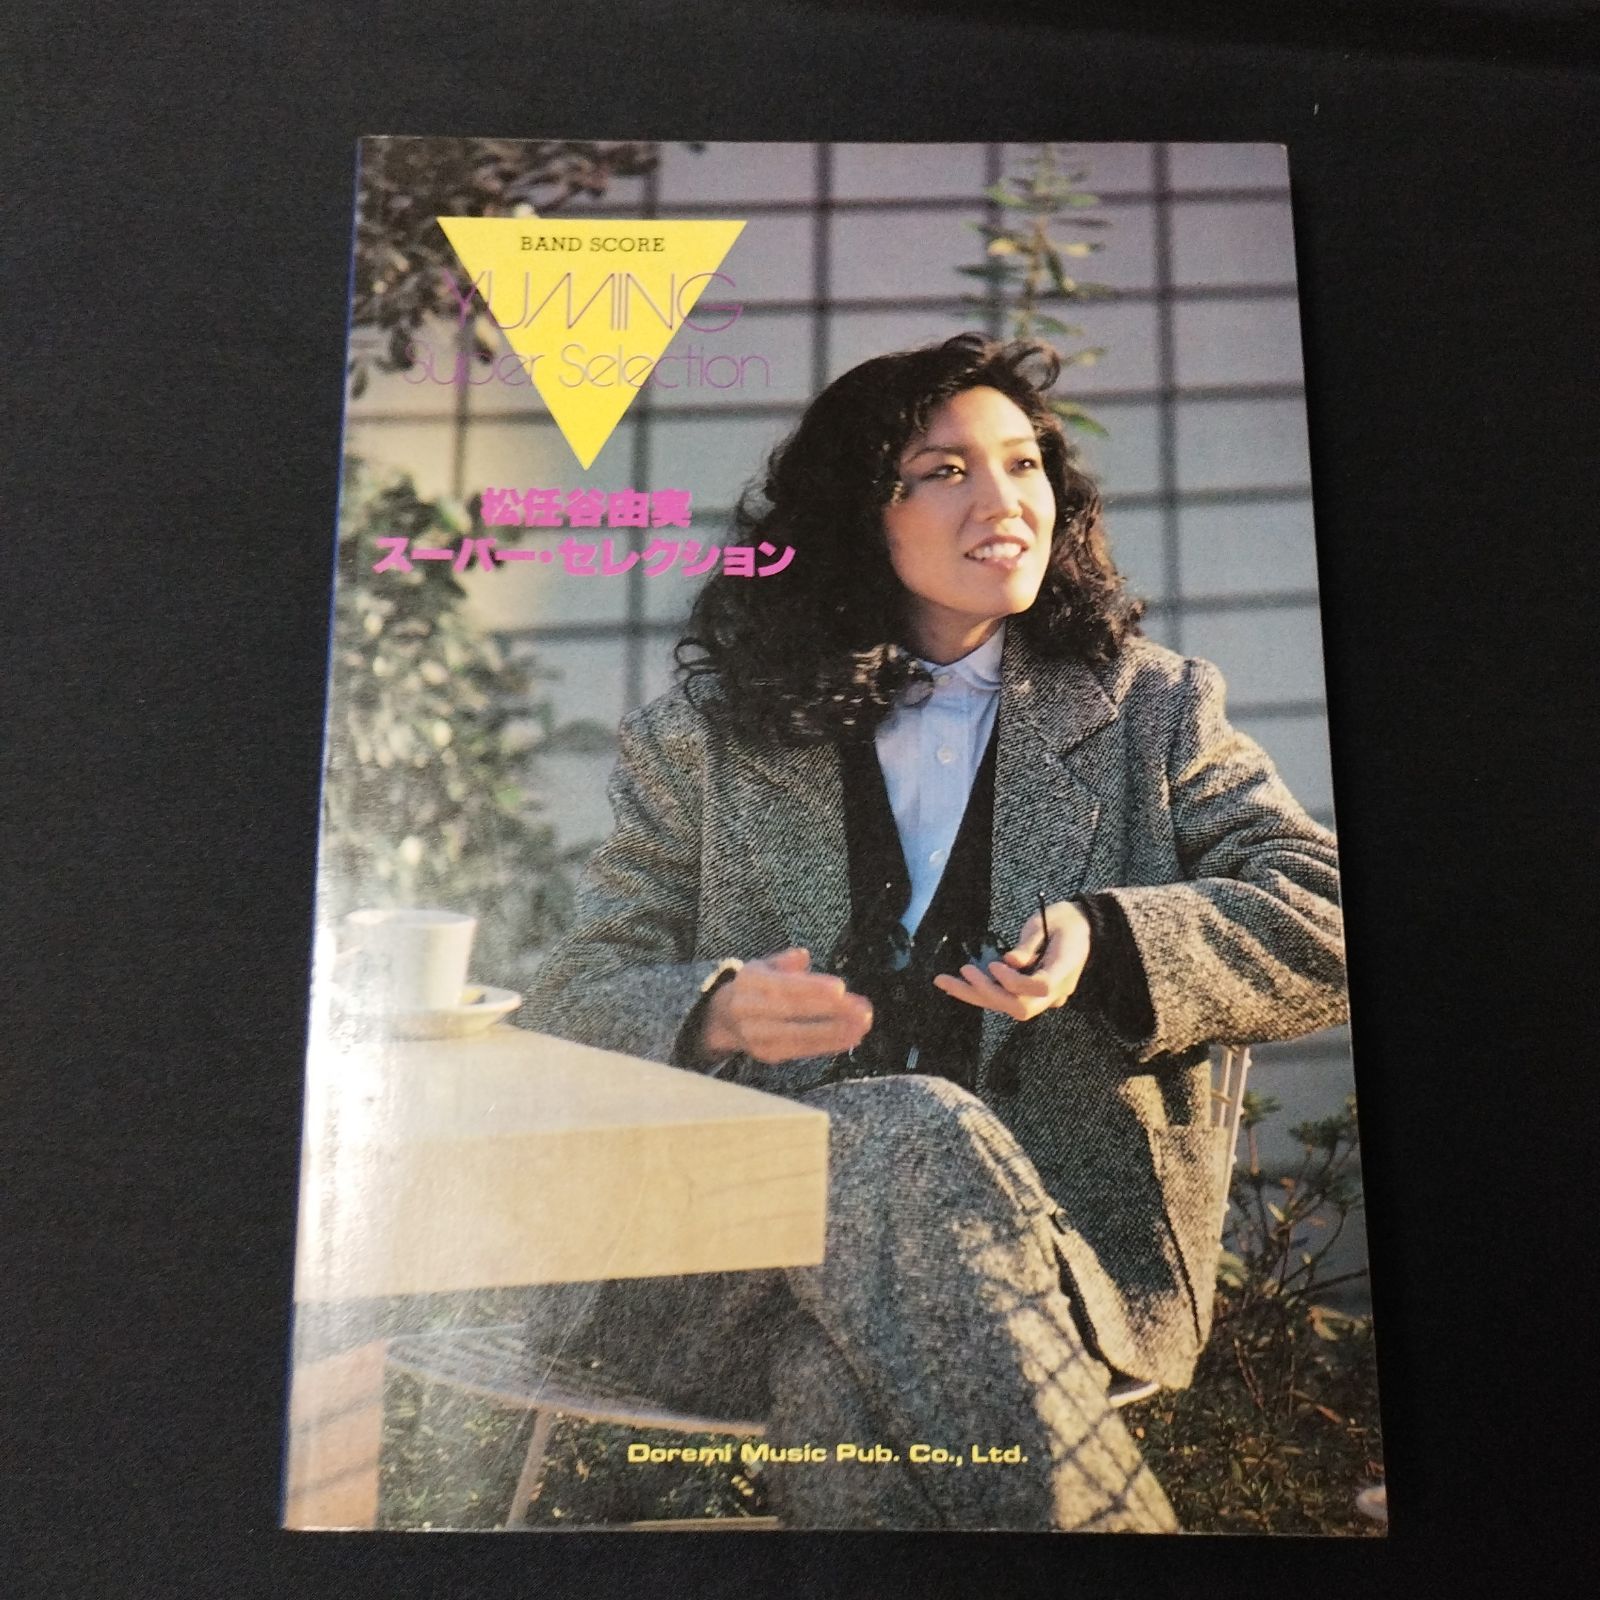 バンドスコア 松任谷由実 スーパー・セレクション 1984年発行 楽譜 棚 